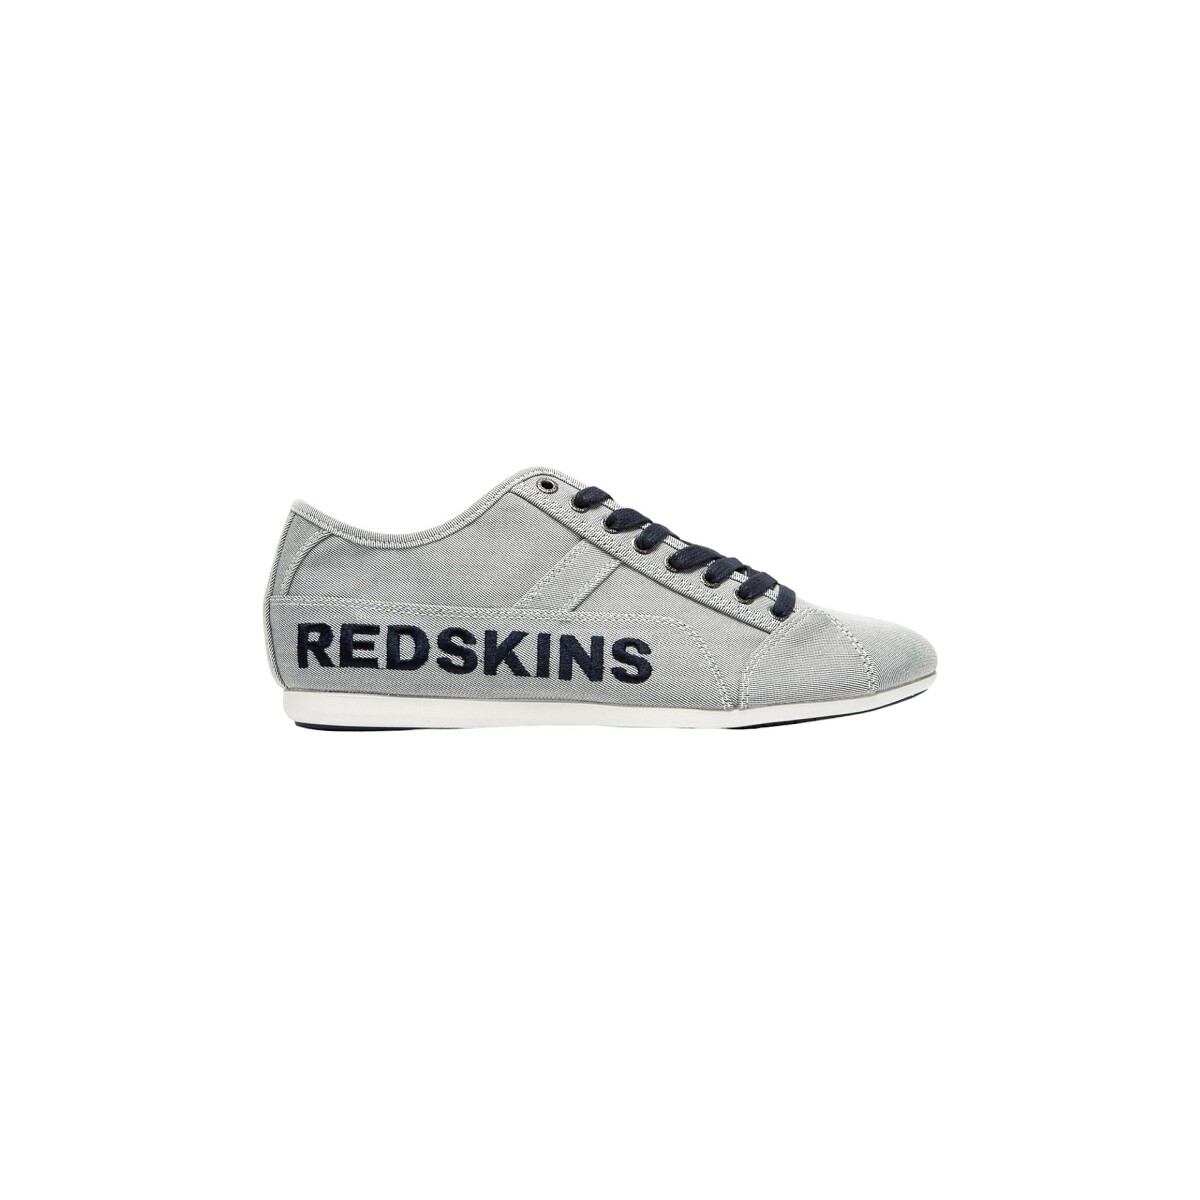 Παπούτσια Άνδρας Sneakers Redskins TEXAS Grey